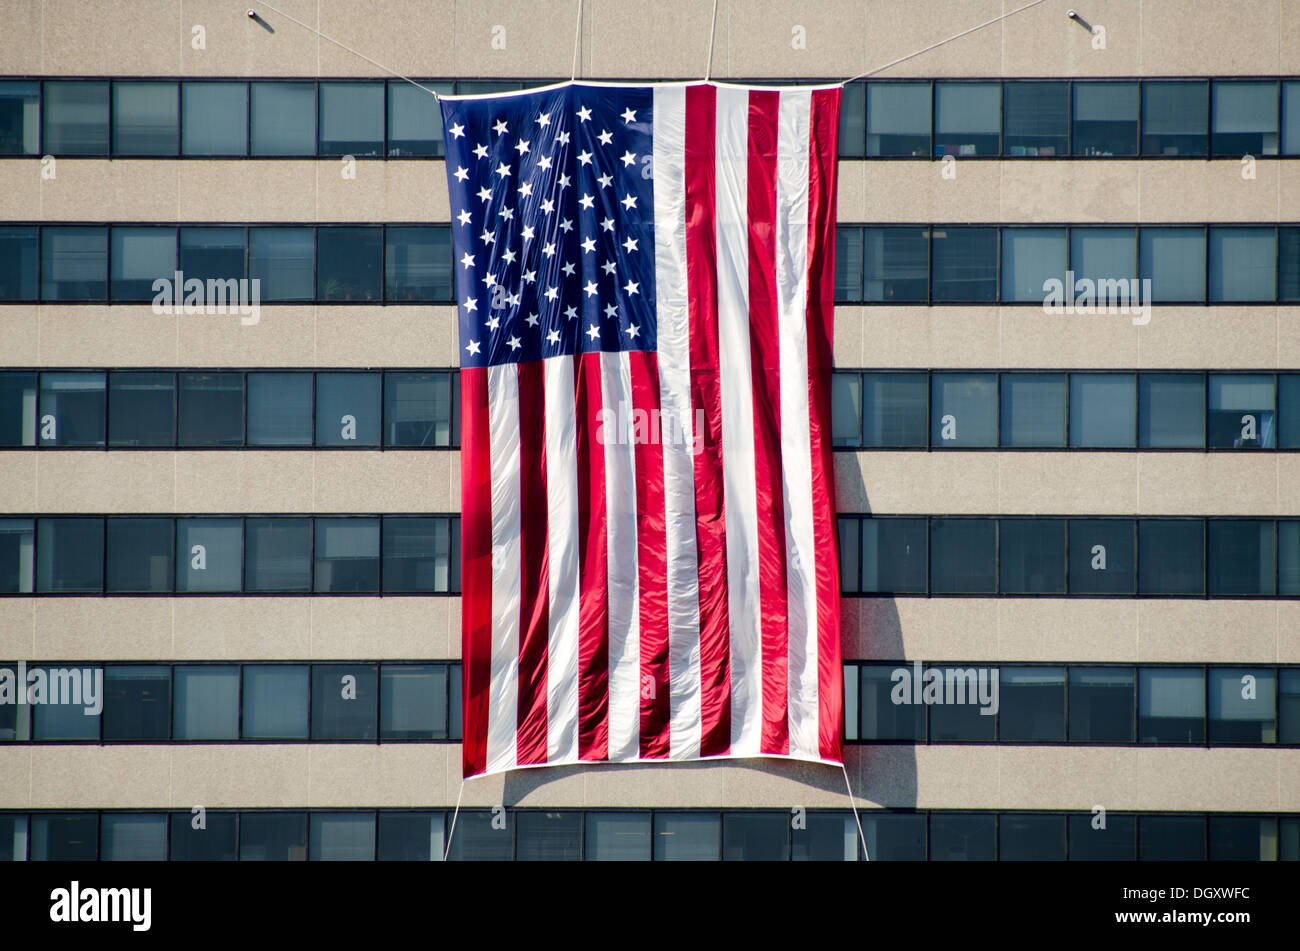 Appaltatori della difesa e altre attività di base in Rosslyn, Virginia, drappeggio grandi bandiere sul al di fuori dei loro edifici per l'anniversario del 9/11 attacchi terroristici. Il Pentagono, che è stato il bersaglio di uno degli attacchi, è nelle vicinanze. Foto Stock